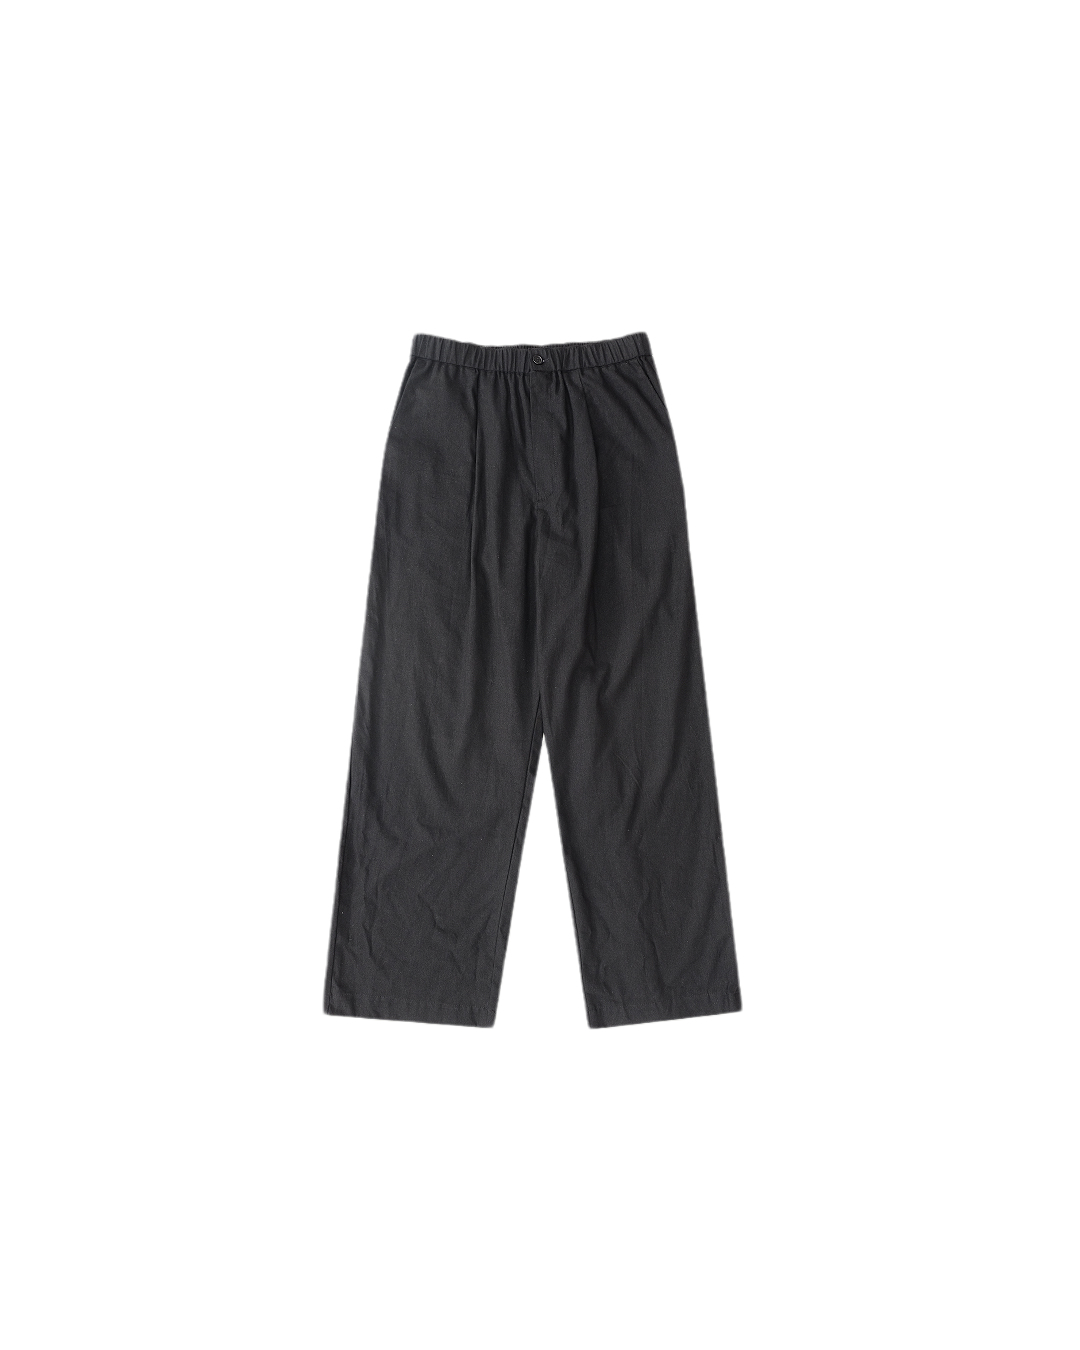 Summer Linen Realxed Pants (Black)